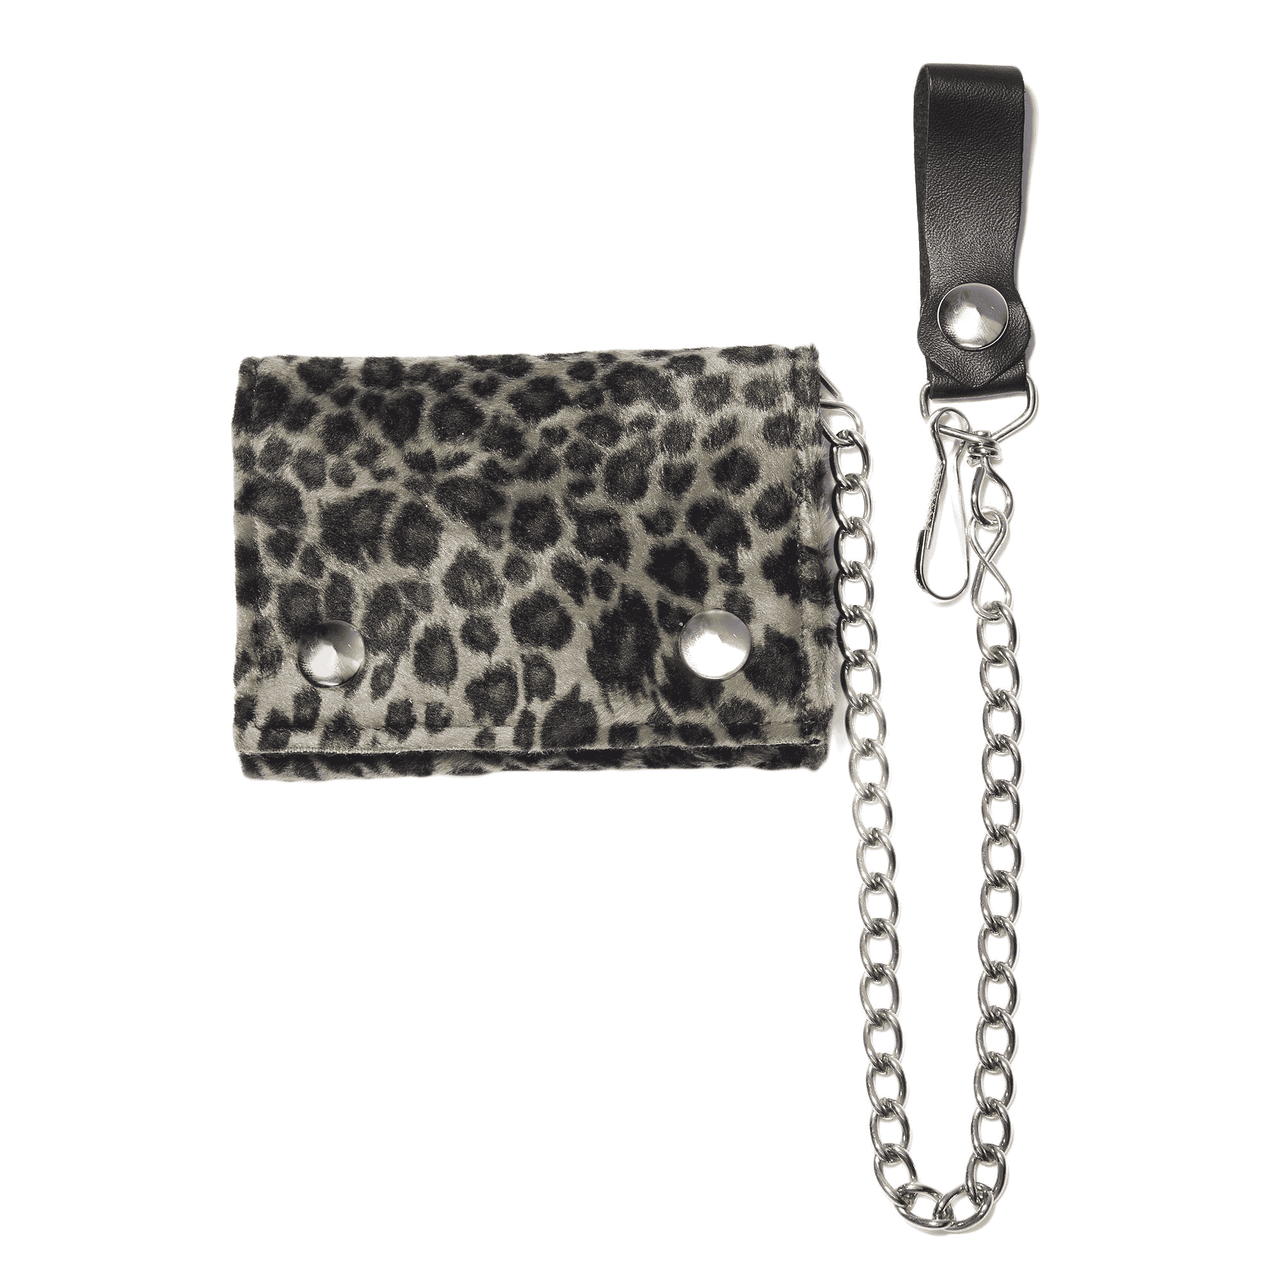 Fuzzy Leopard Tri-Fold Wallet